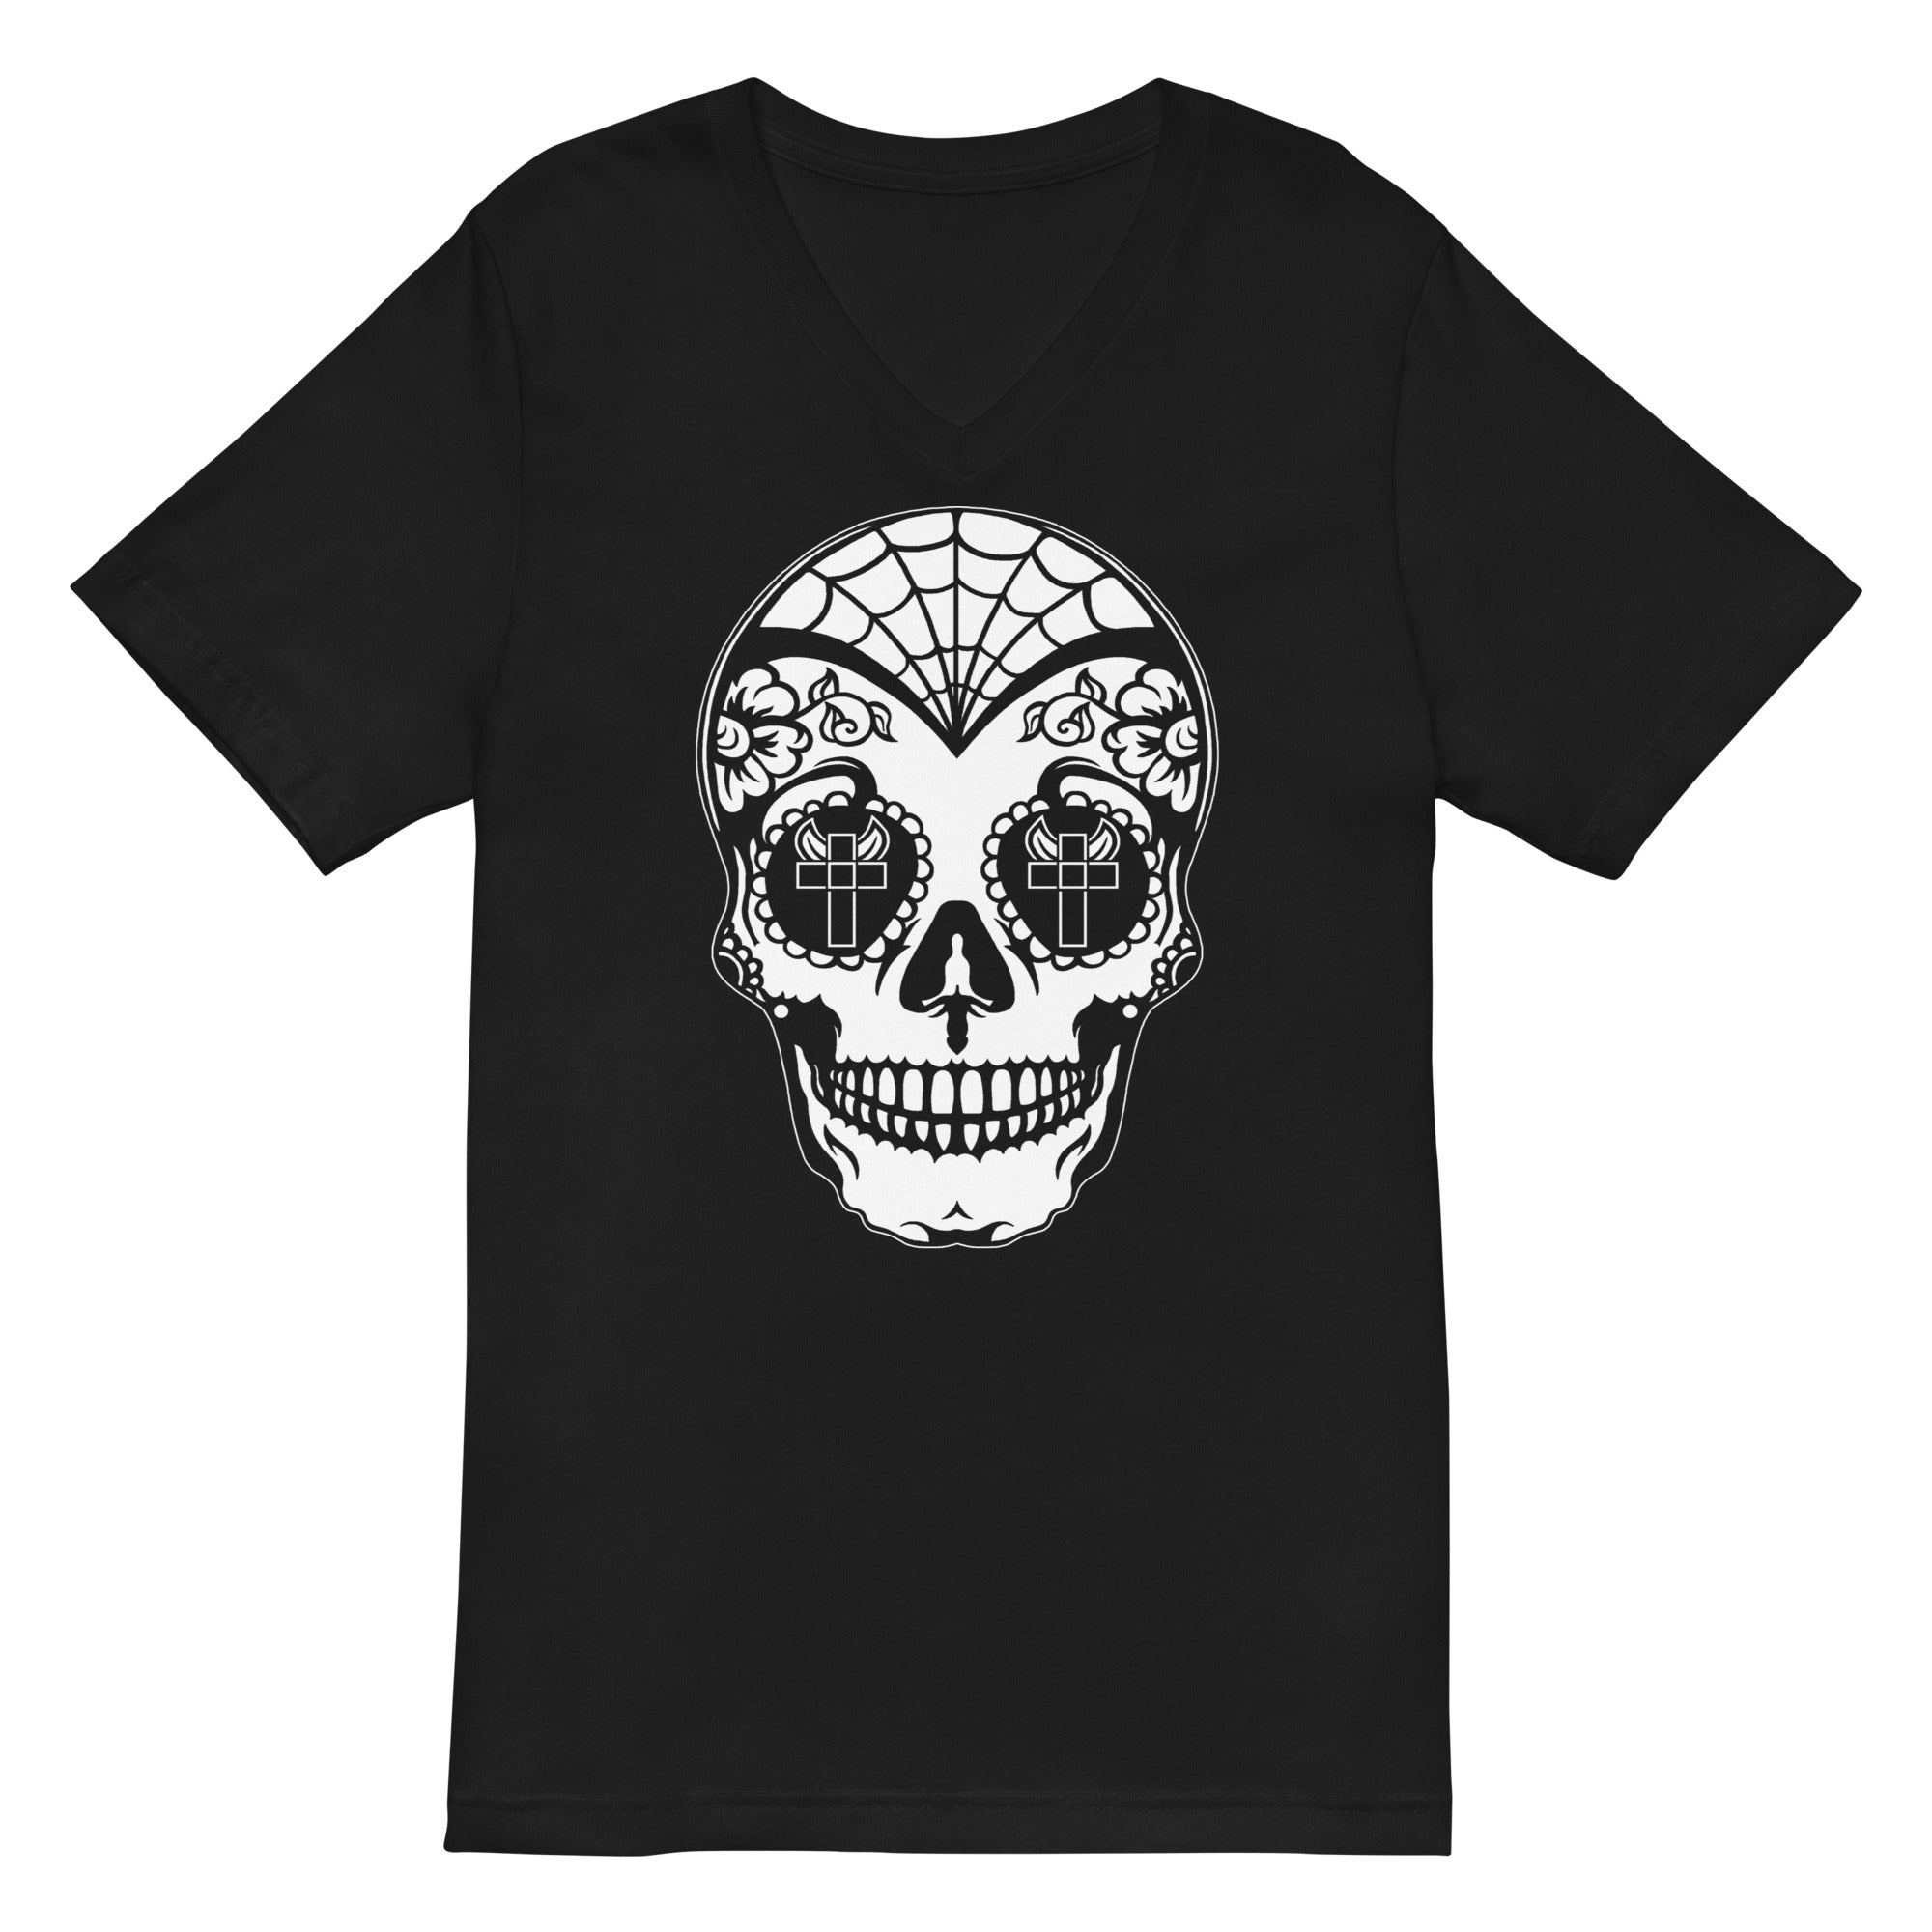 White Sugar Skull Day of the Dead Halloween Women’s Short Sleeve V-Neck T-Shirt - Edge of Life Designs